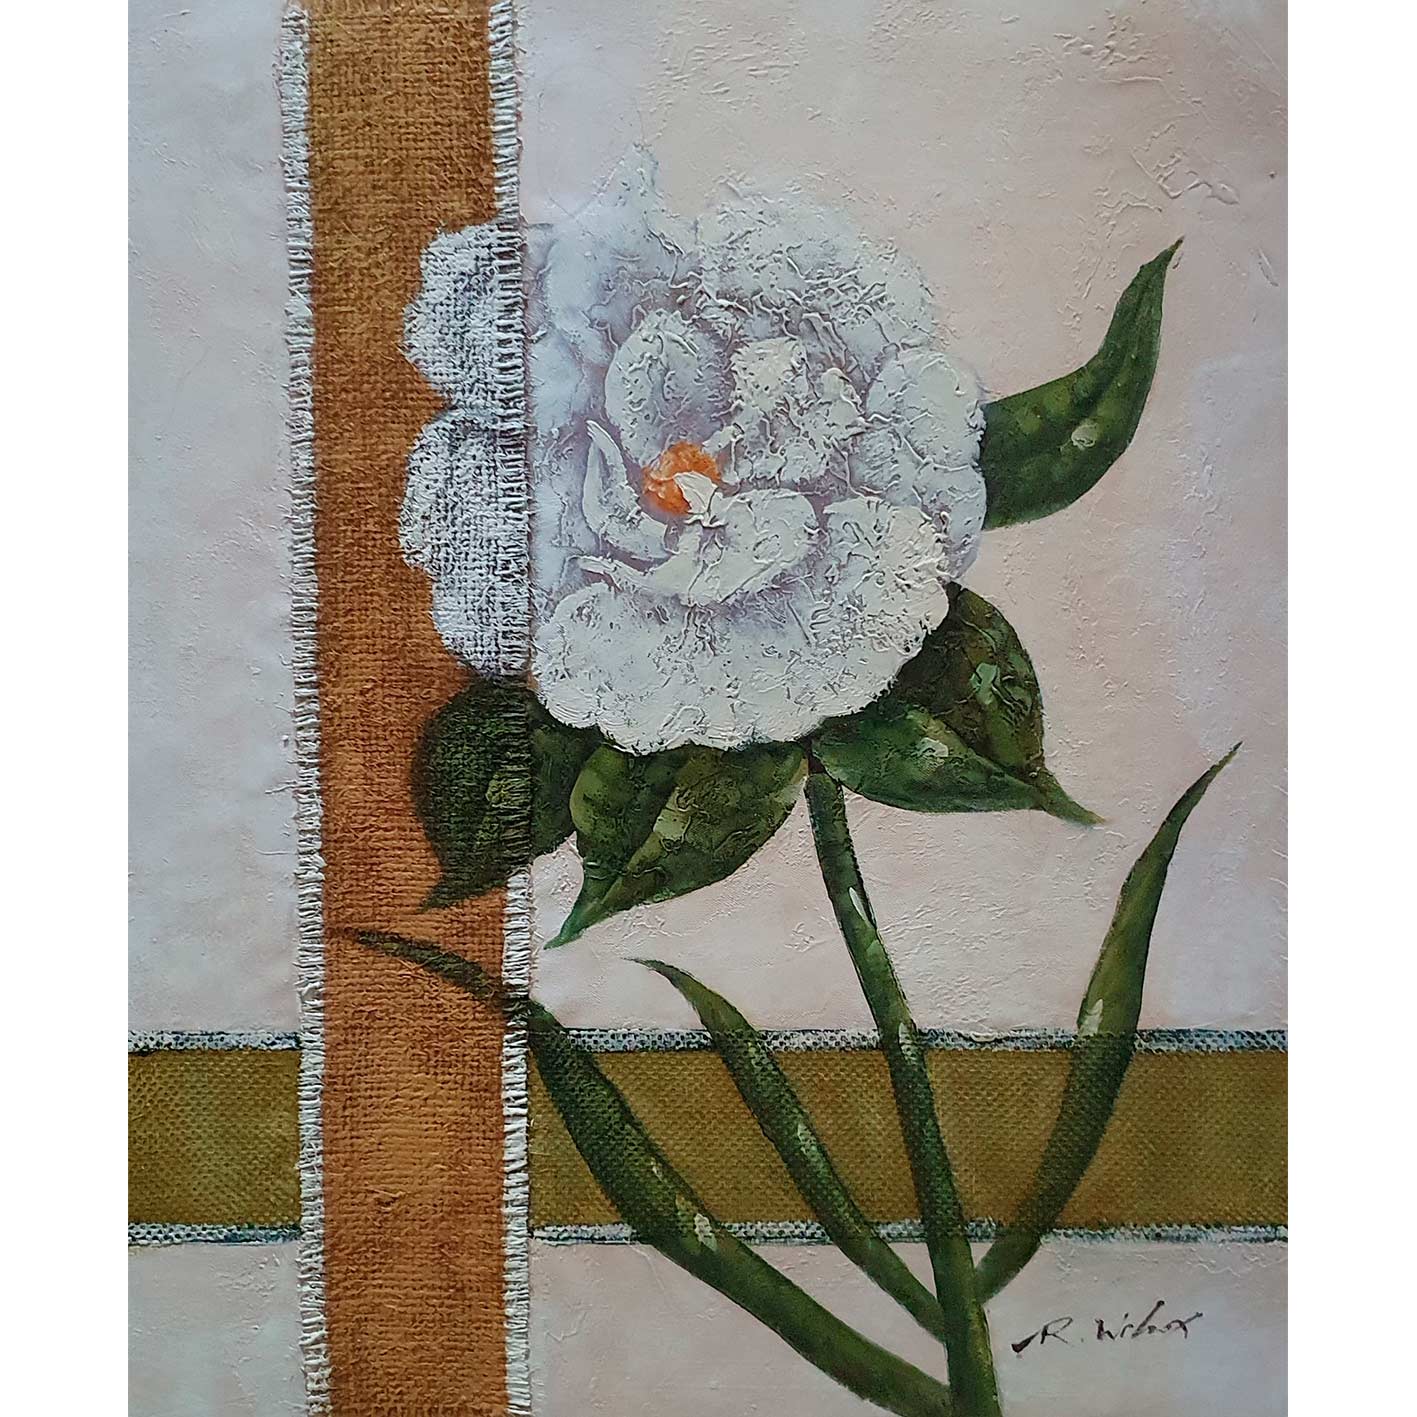 Sackblumen Diptychon Gemälde 50x60 cm [2 Stück]